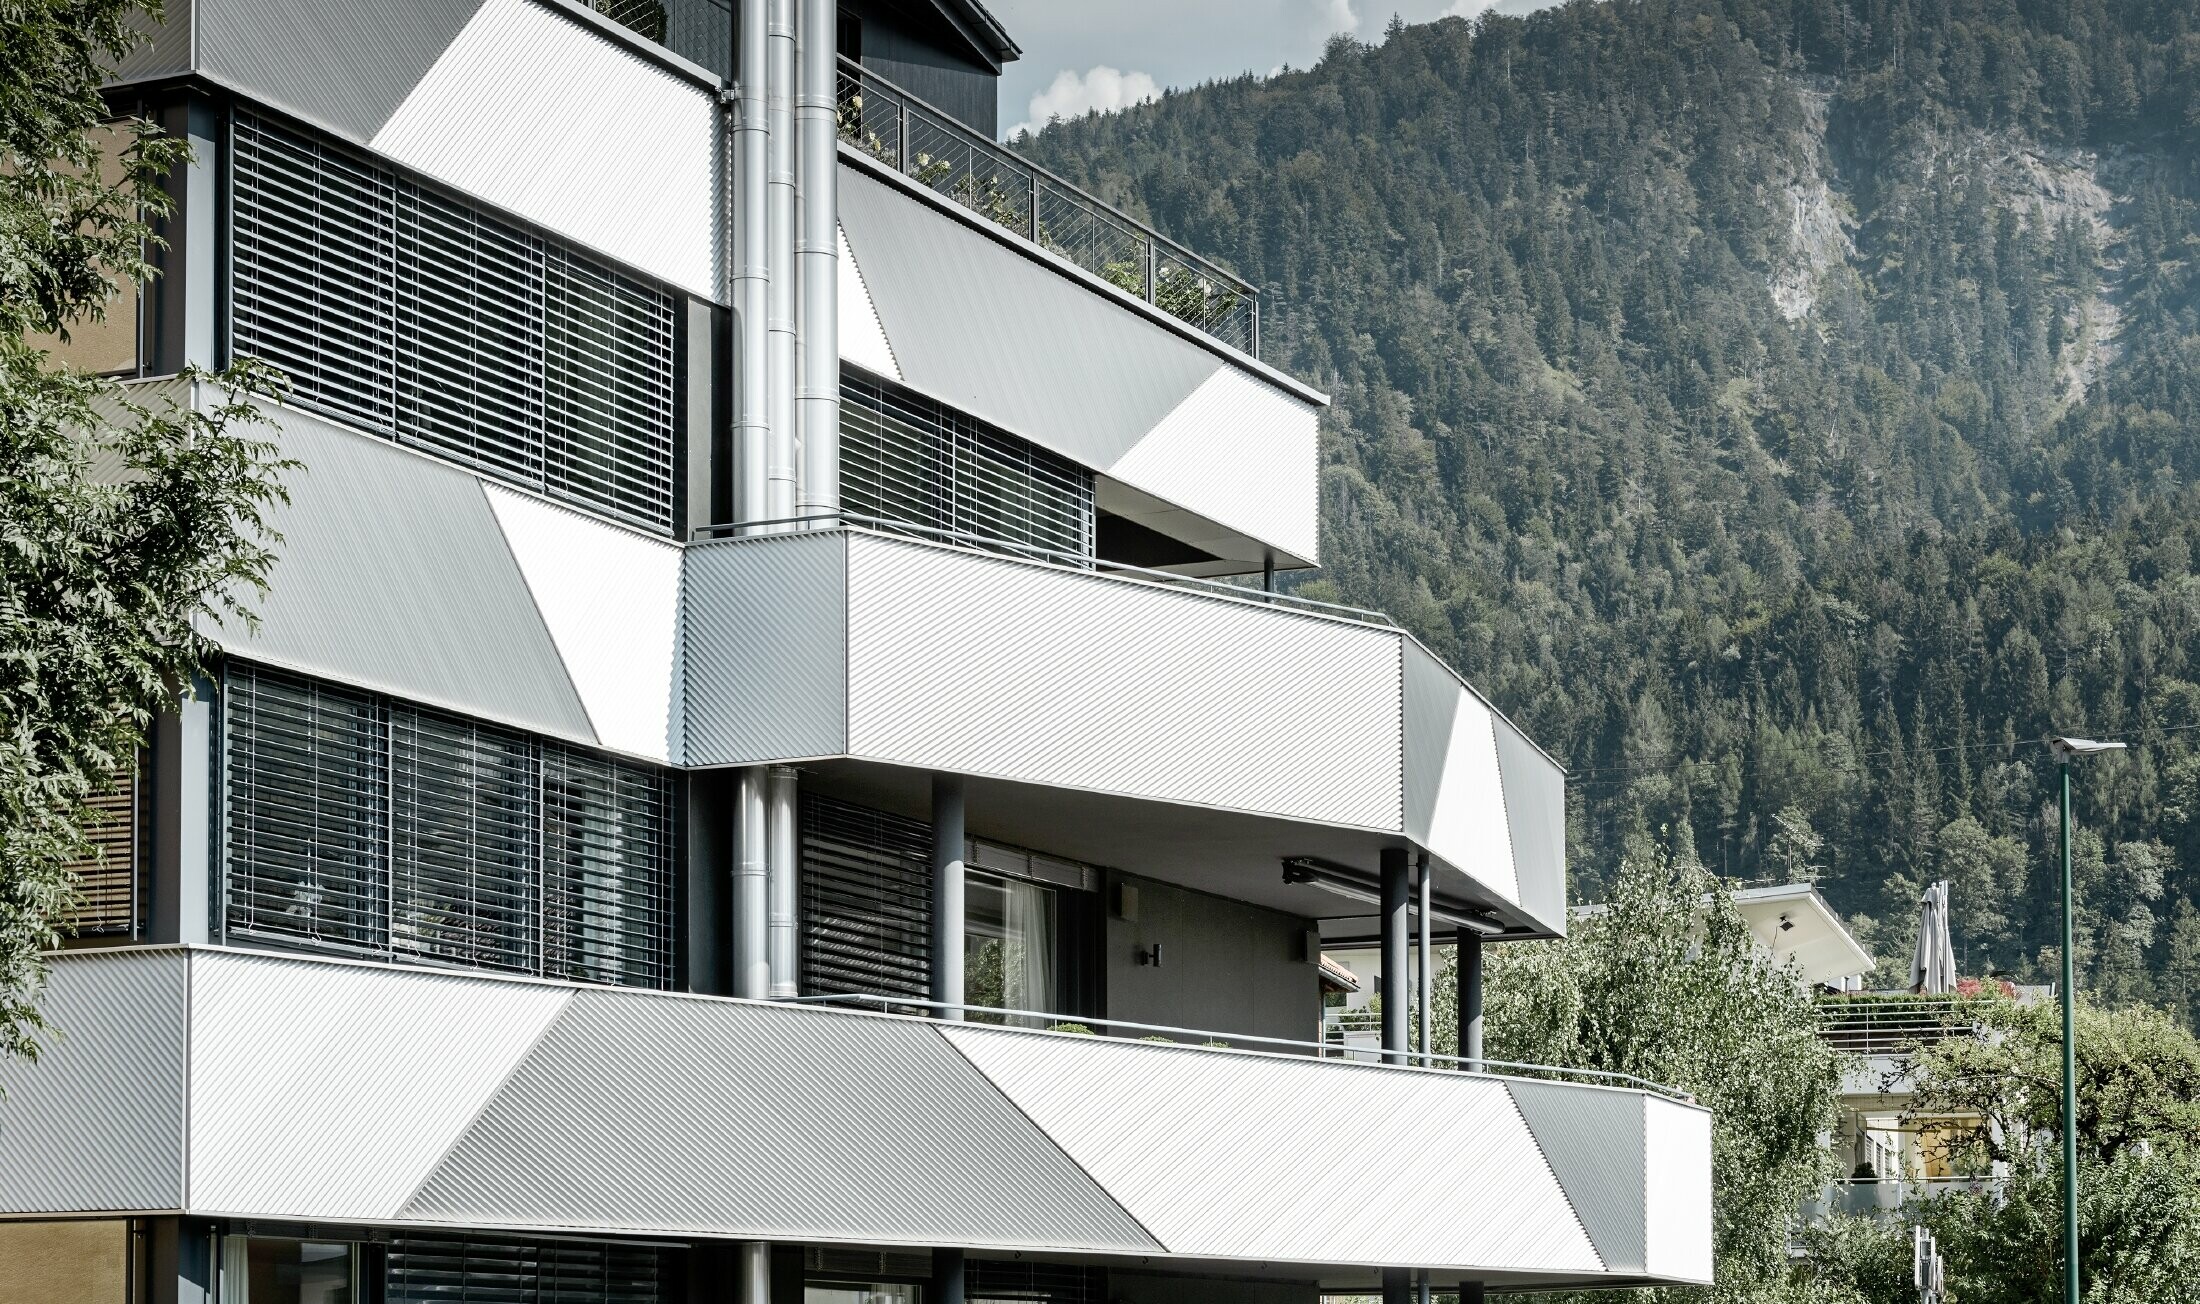 Fassadengestaltung für ein Mehrparteienhaus mit Balkonen und Loggien mit dem PREFA Zackenprofil mit schräger Verlegung.